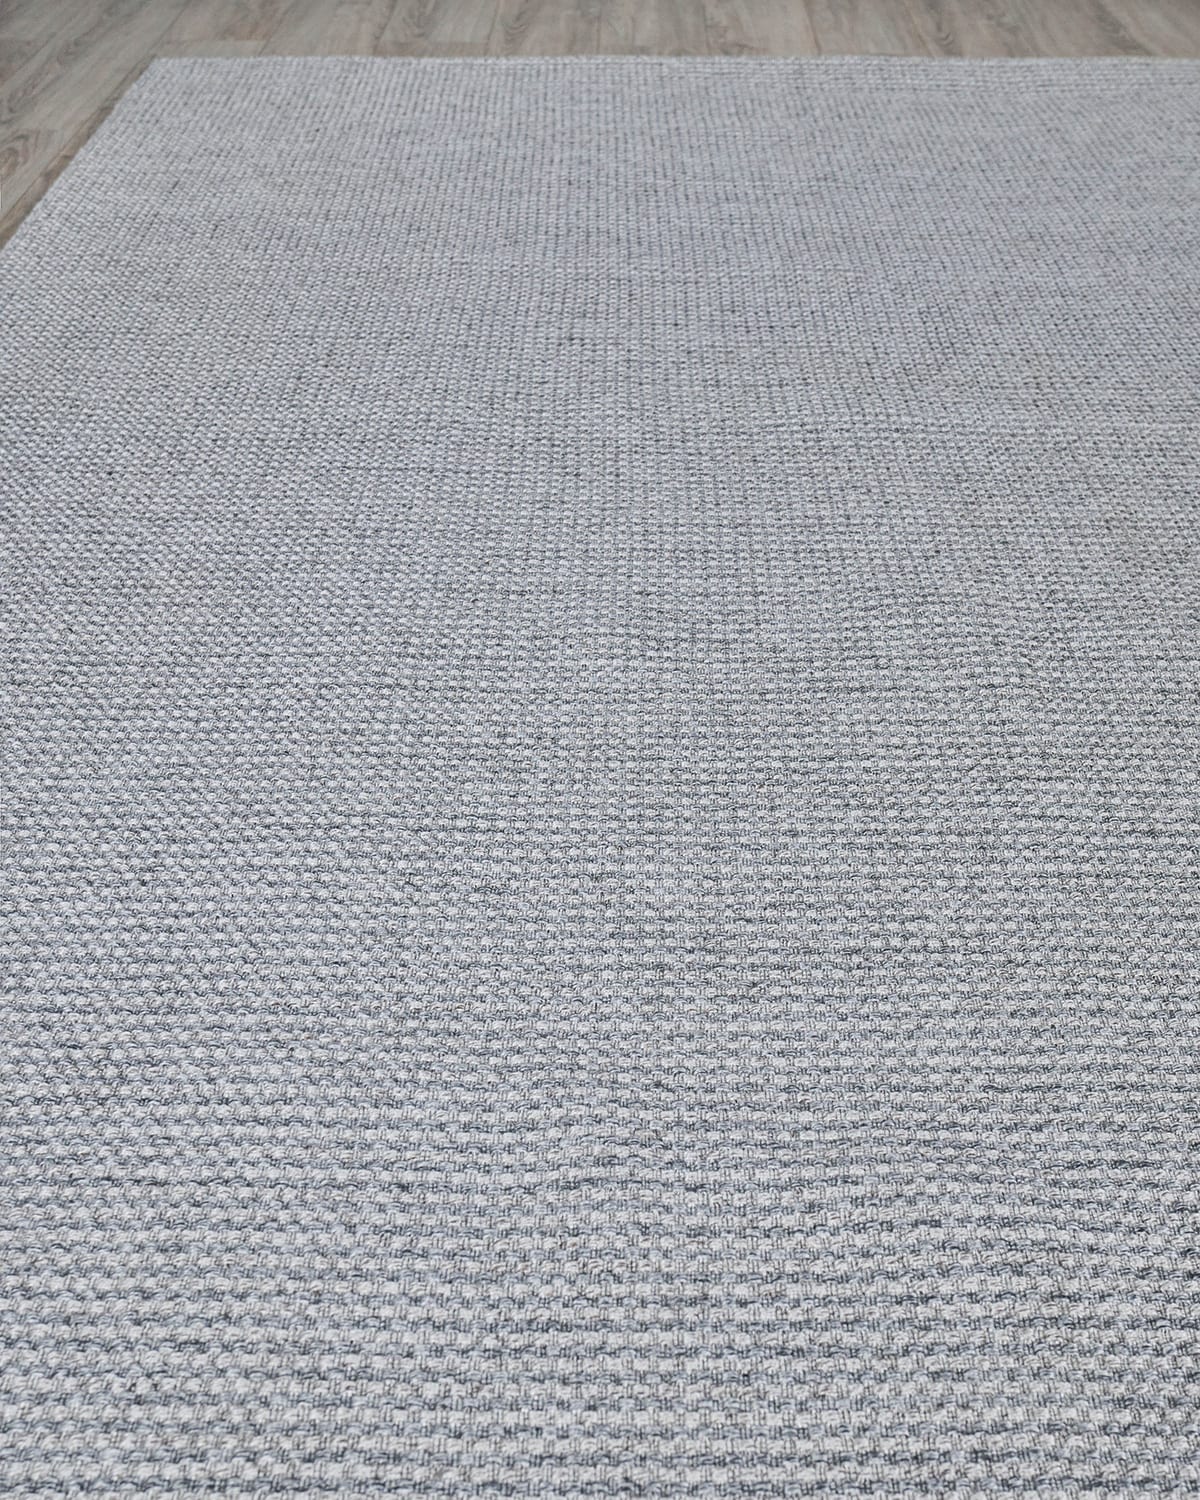 Adrianna Indoor/Outdoor Flat-Weave Rug, 10' x 14'